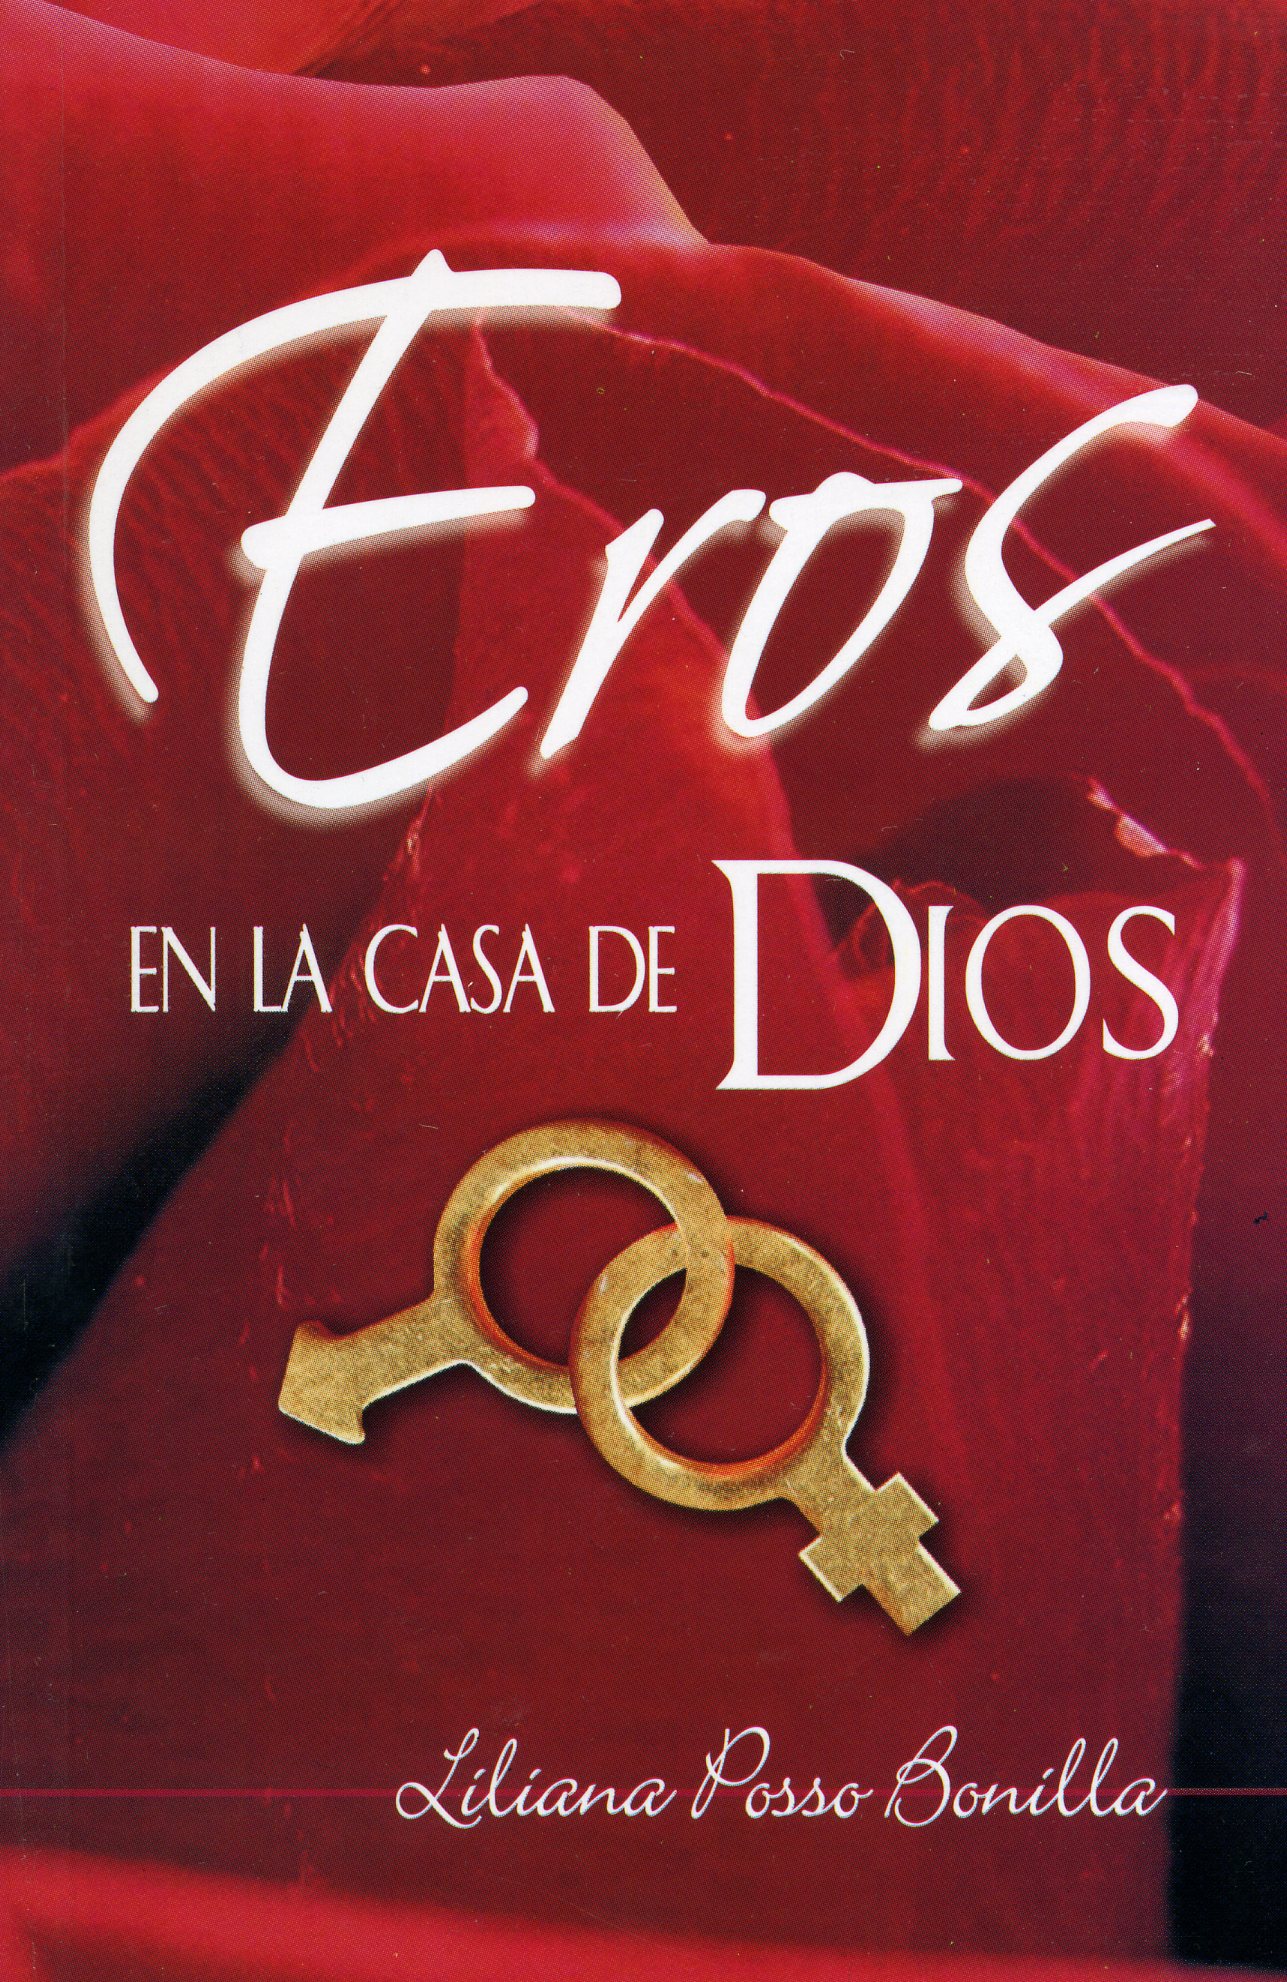 Eros en la casa de Dios